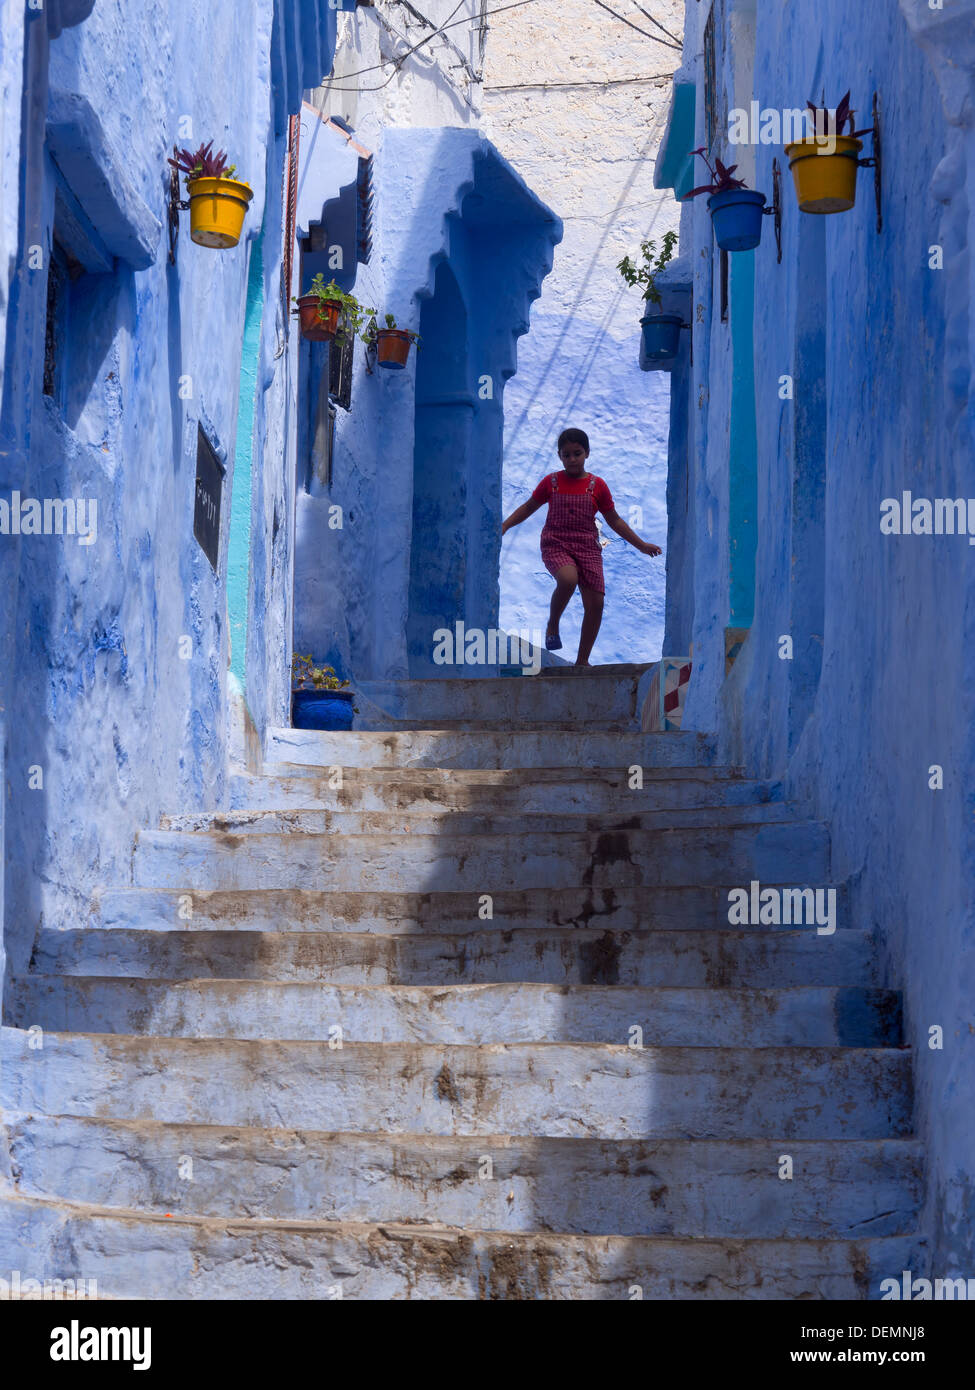 Jeune fille courir dans la rue avec des maisons peintes en bleu clair à Chefchaouen, Maroc Banque D'Images